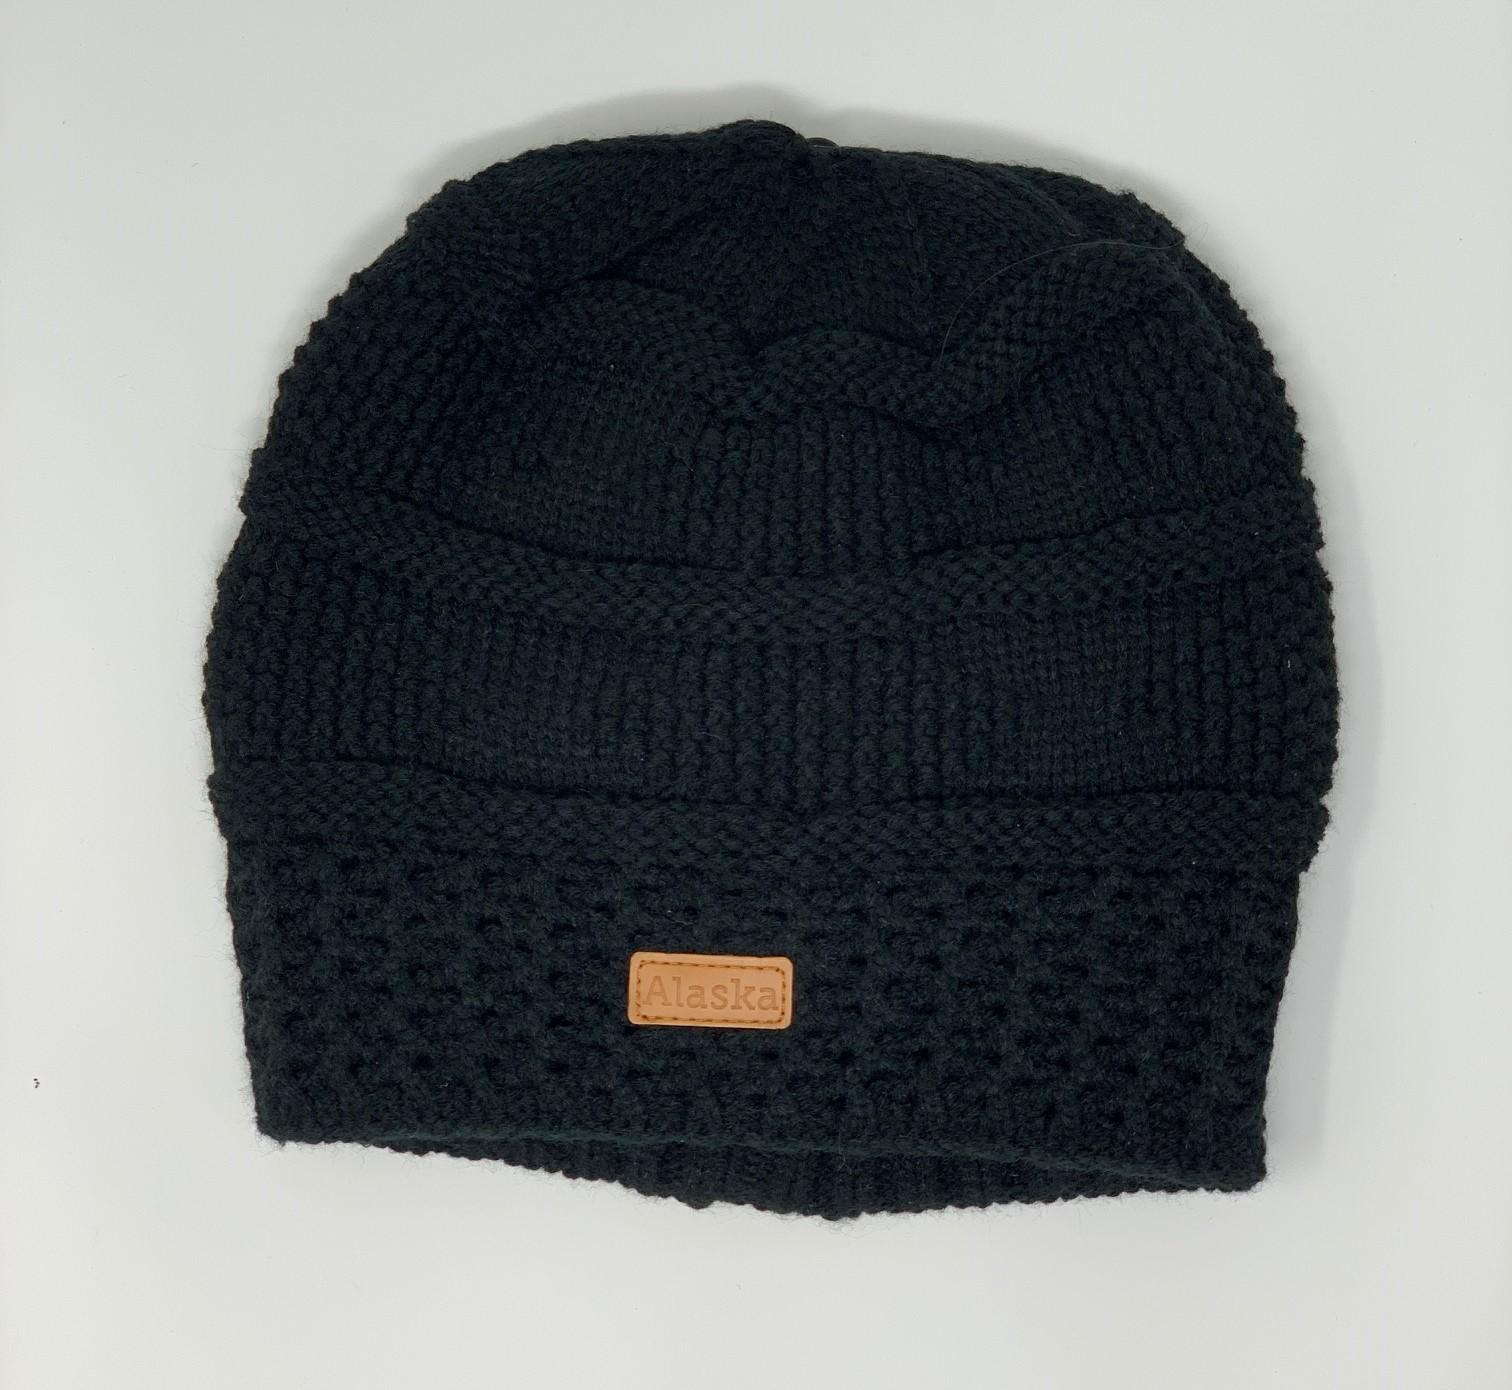  Knit Hat- Black Ak Patch